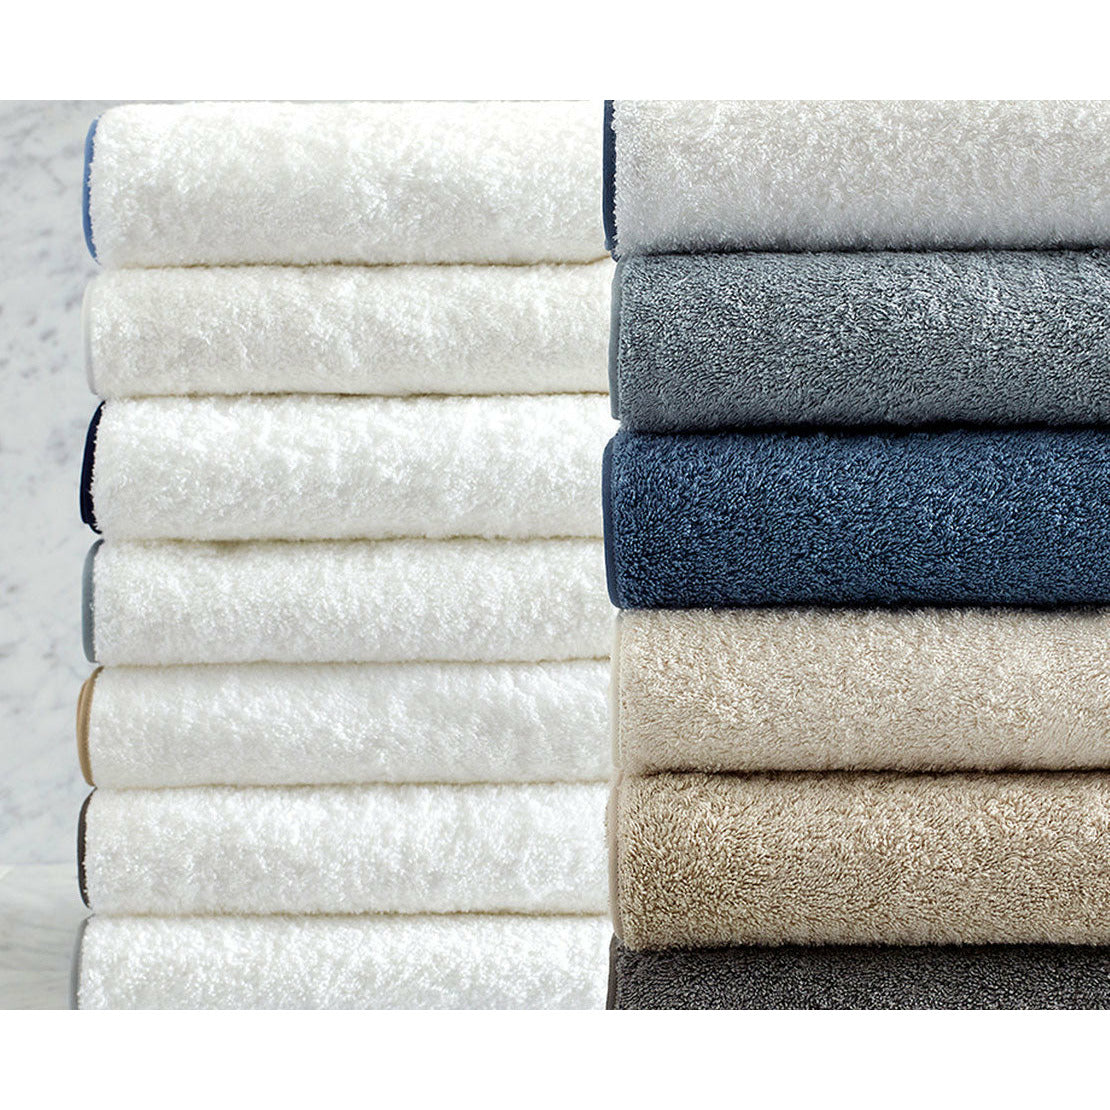 https://flandb.com/cdn/shop/products/Matouk-Cairo-Bath-Towels-Stack-Colors_1200x.jpg?v=1682472668